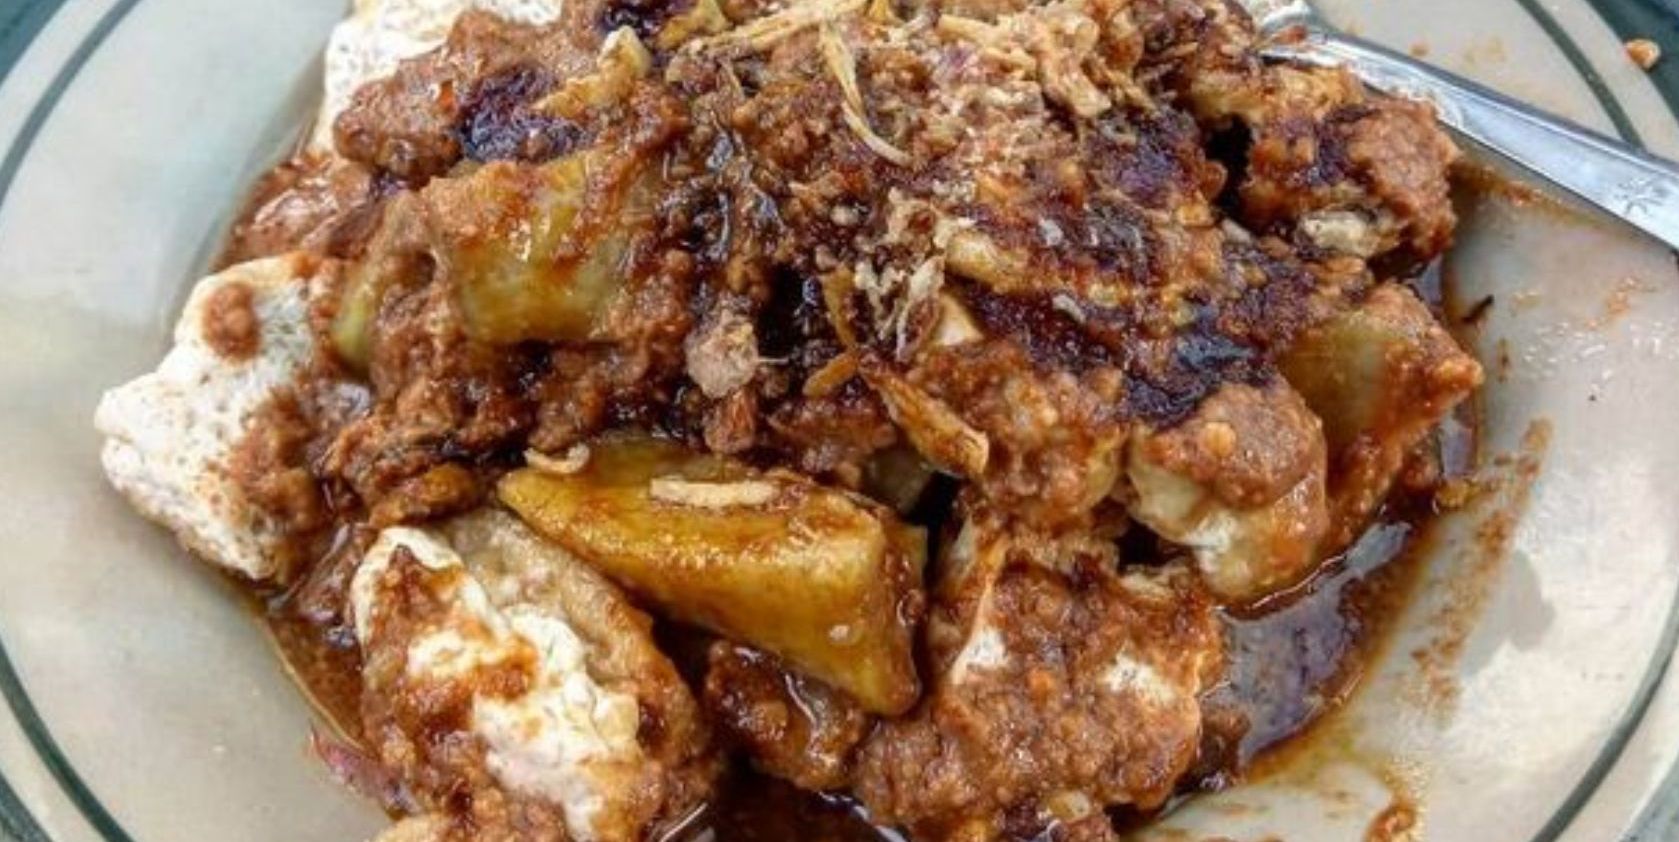 Hucap jadi salah satu kuliner khas Kuningan Jawa Barat yang paling banyak dicari.